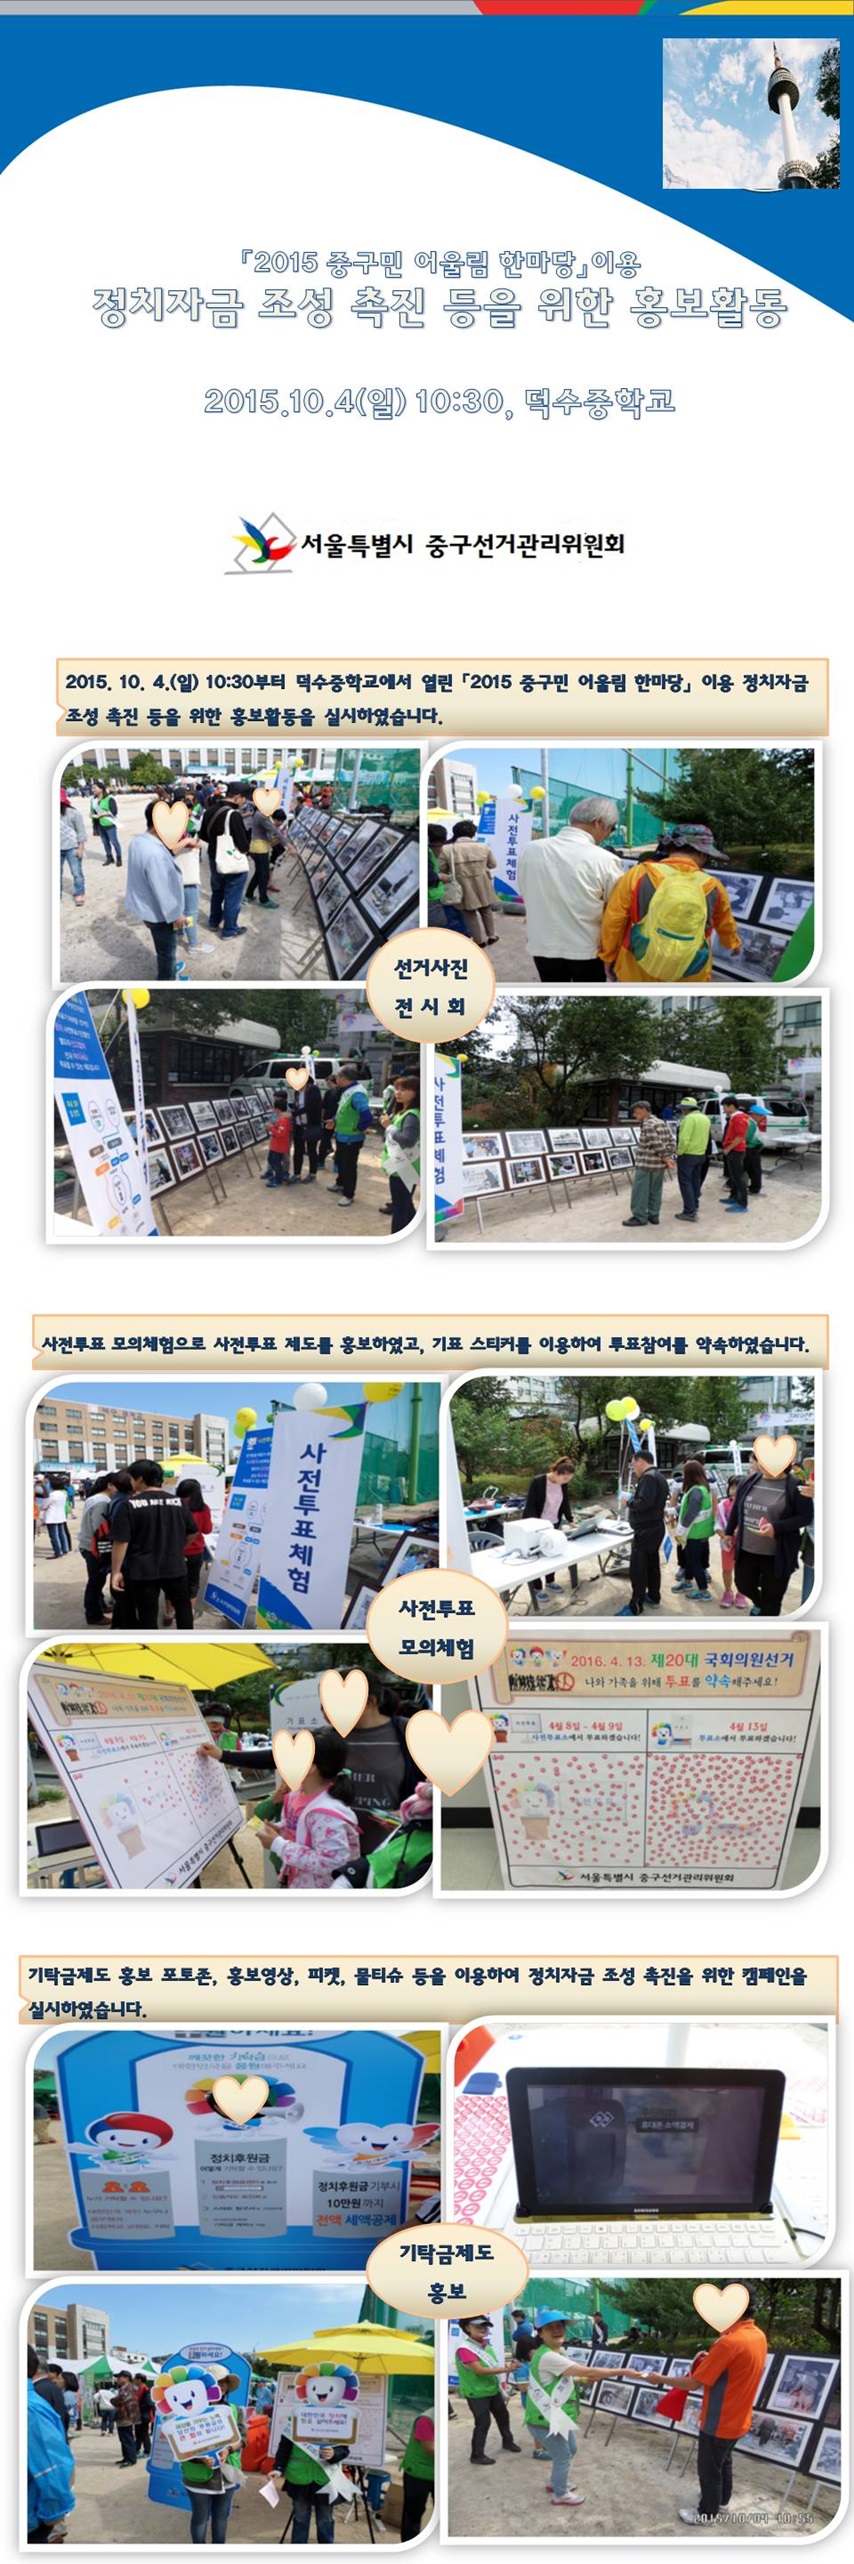 정치자금 조성 촉진 등을 위한 홍보캠페인